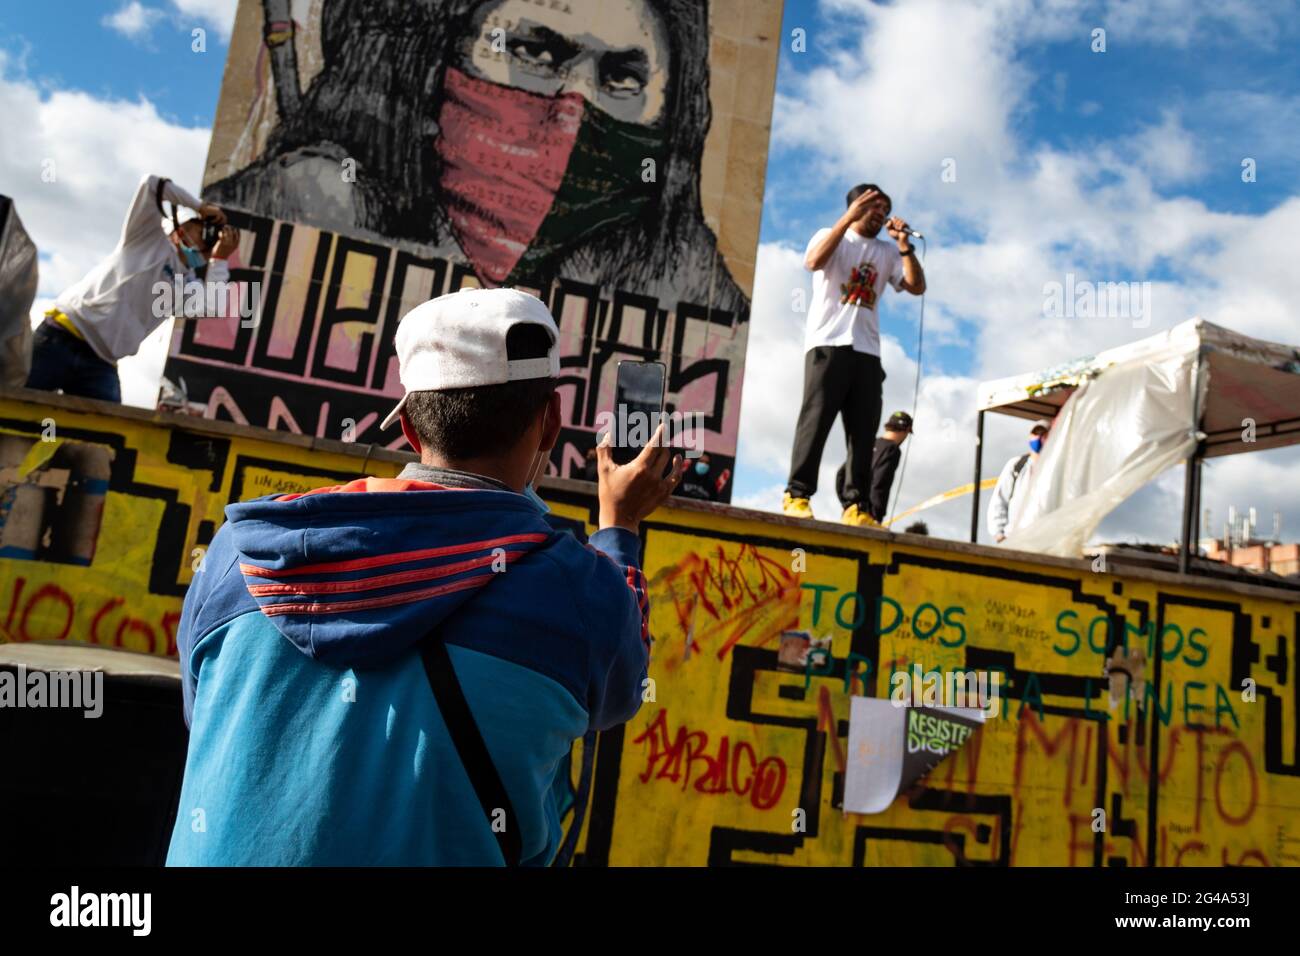 Le concert Arte ONUDI x Colombie tenu au Monumento a los Heroes, plusieurs artistes de musique urbaine et Mc ont réalisé diverses activités telles que des gravures, des graffitis et un pot communautaire dans l'intention de s'unir pour soutenir la grève nationale 'Paro Nacional' à Bogota, Colombie, le 19 juin 2021. Banque D'Images